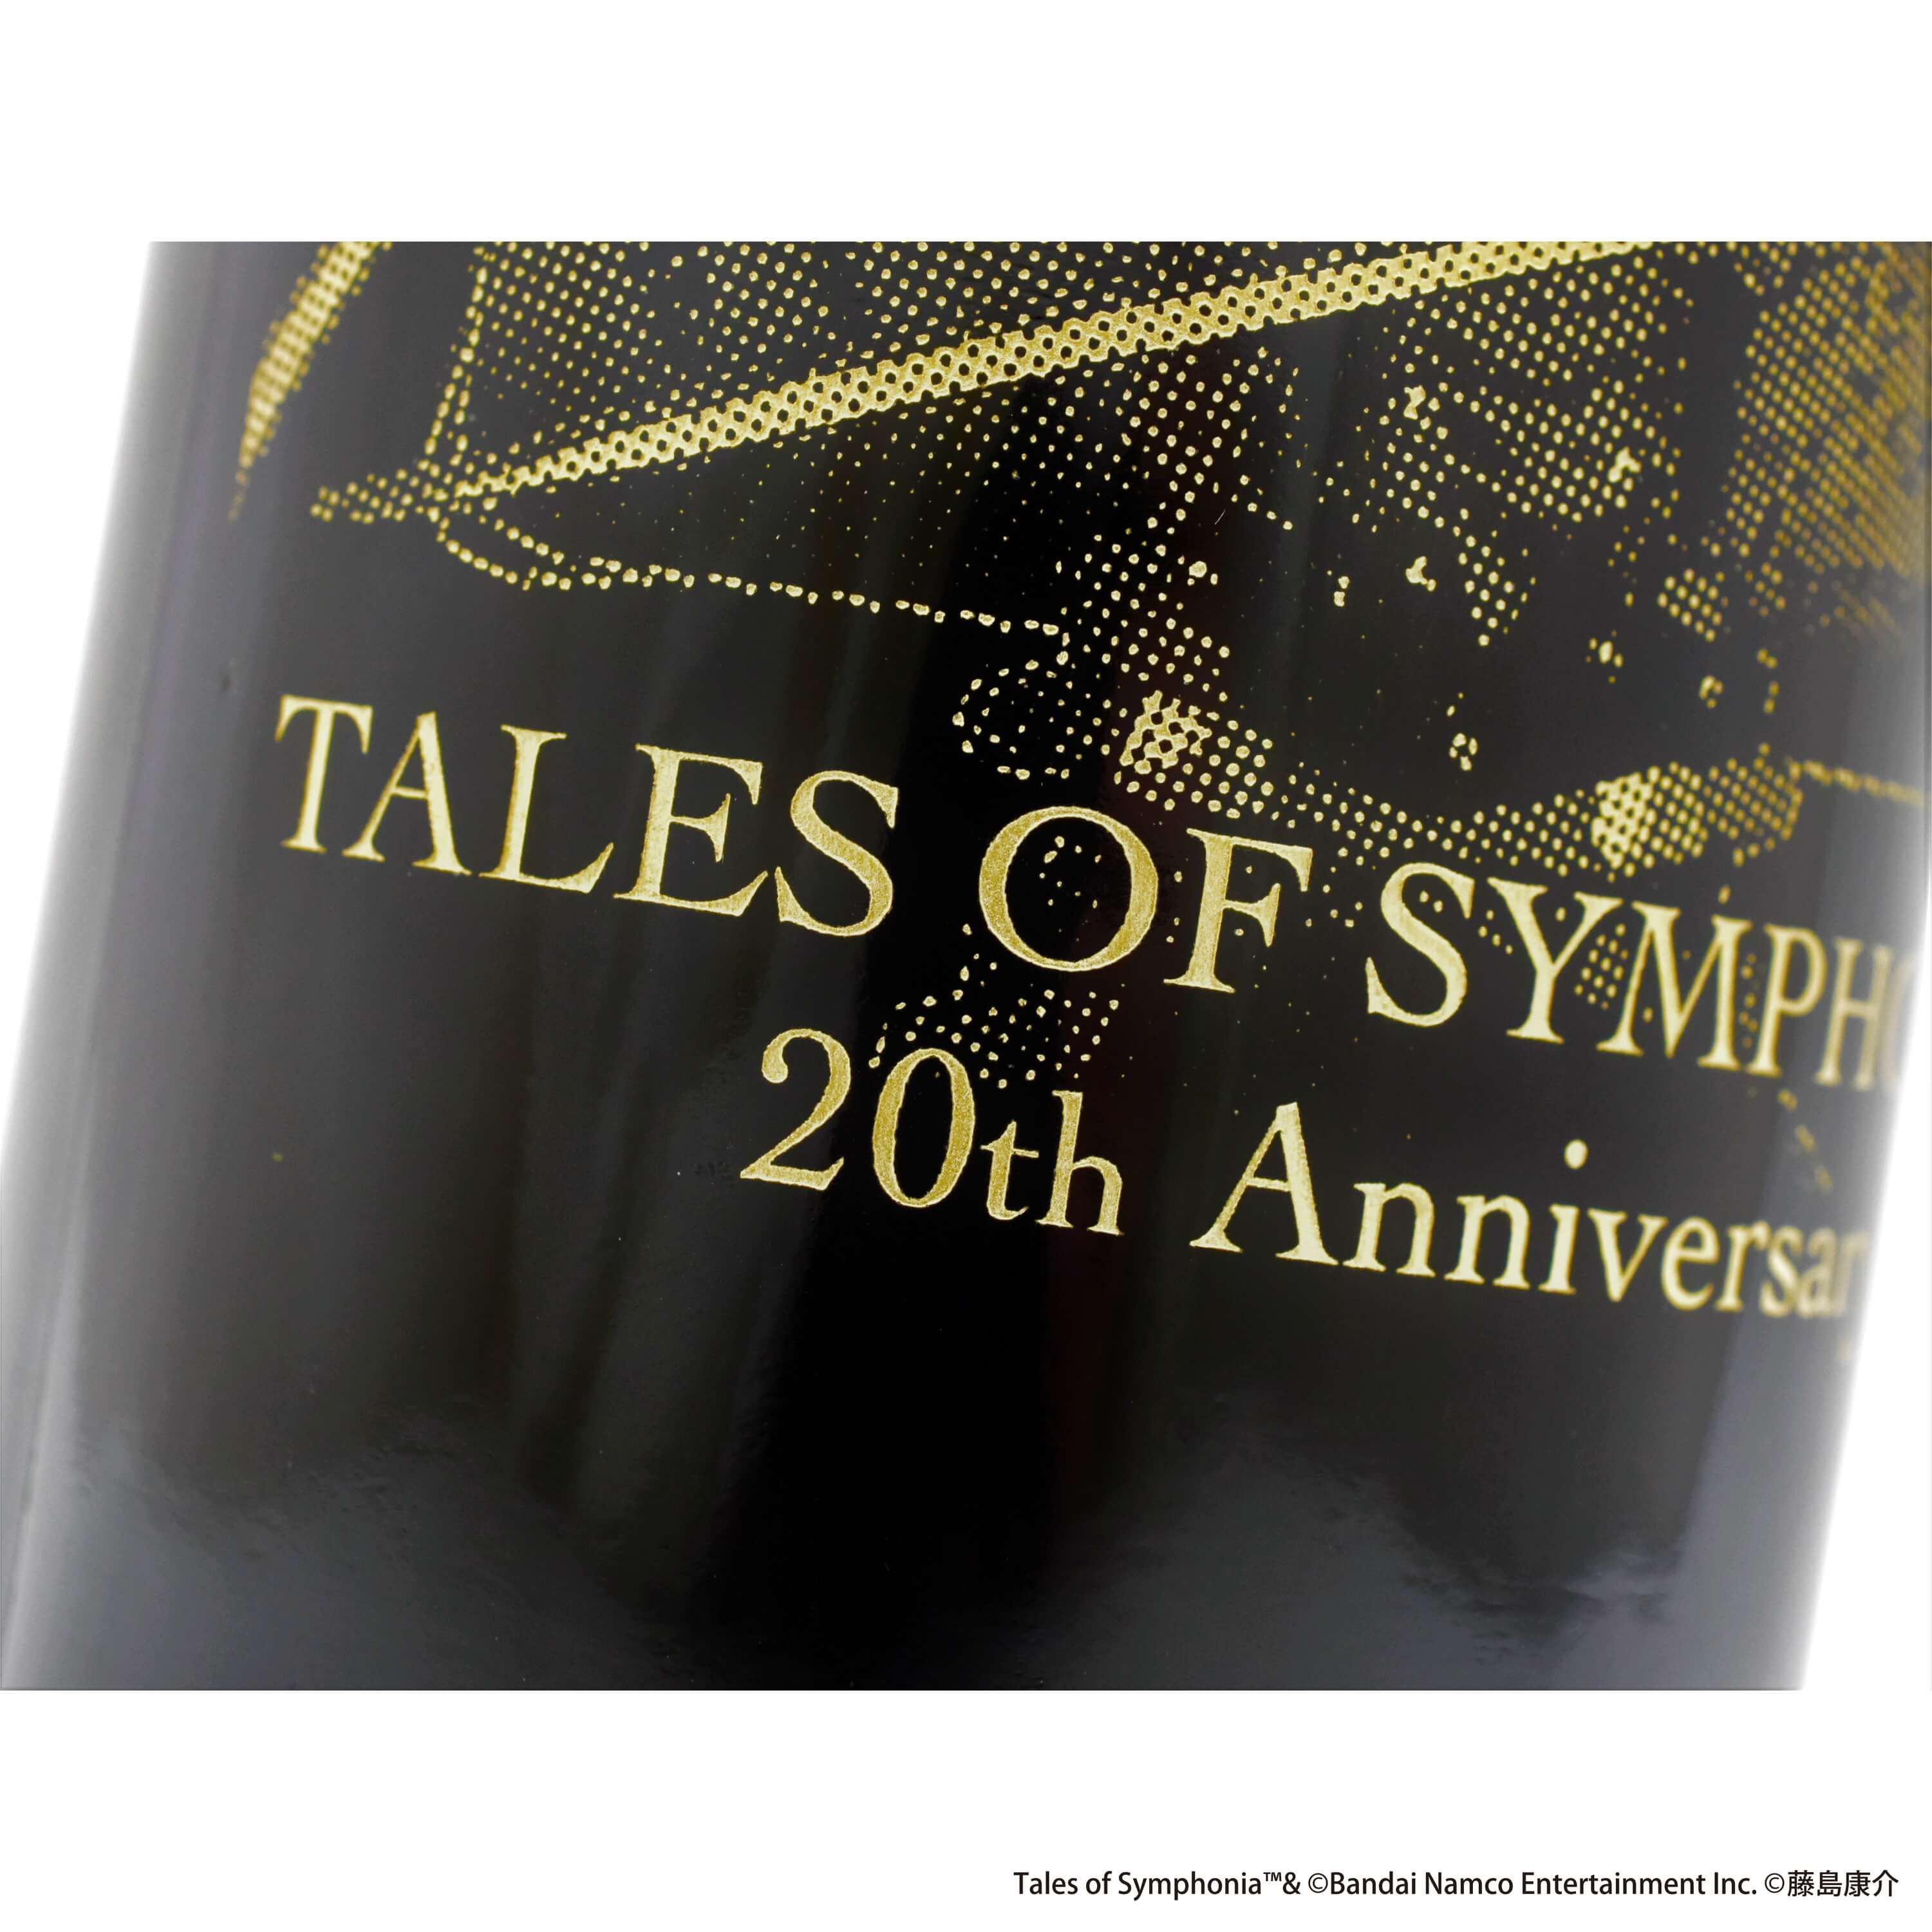 彫刻ボトル「テイルズ オブ シンフォニア」01/キービジュアル(公式イラスト)(赤ワイン・フランス産)【お酒】